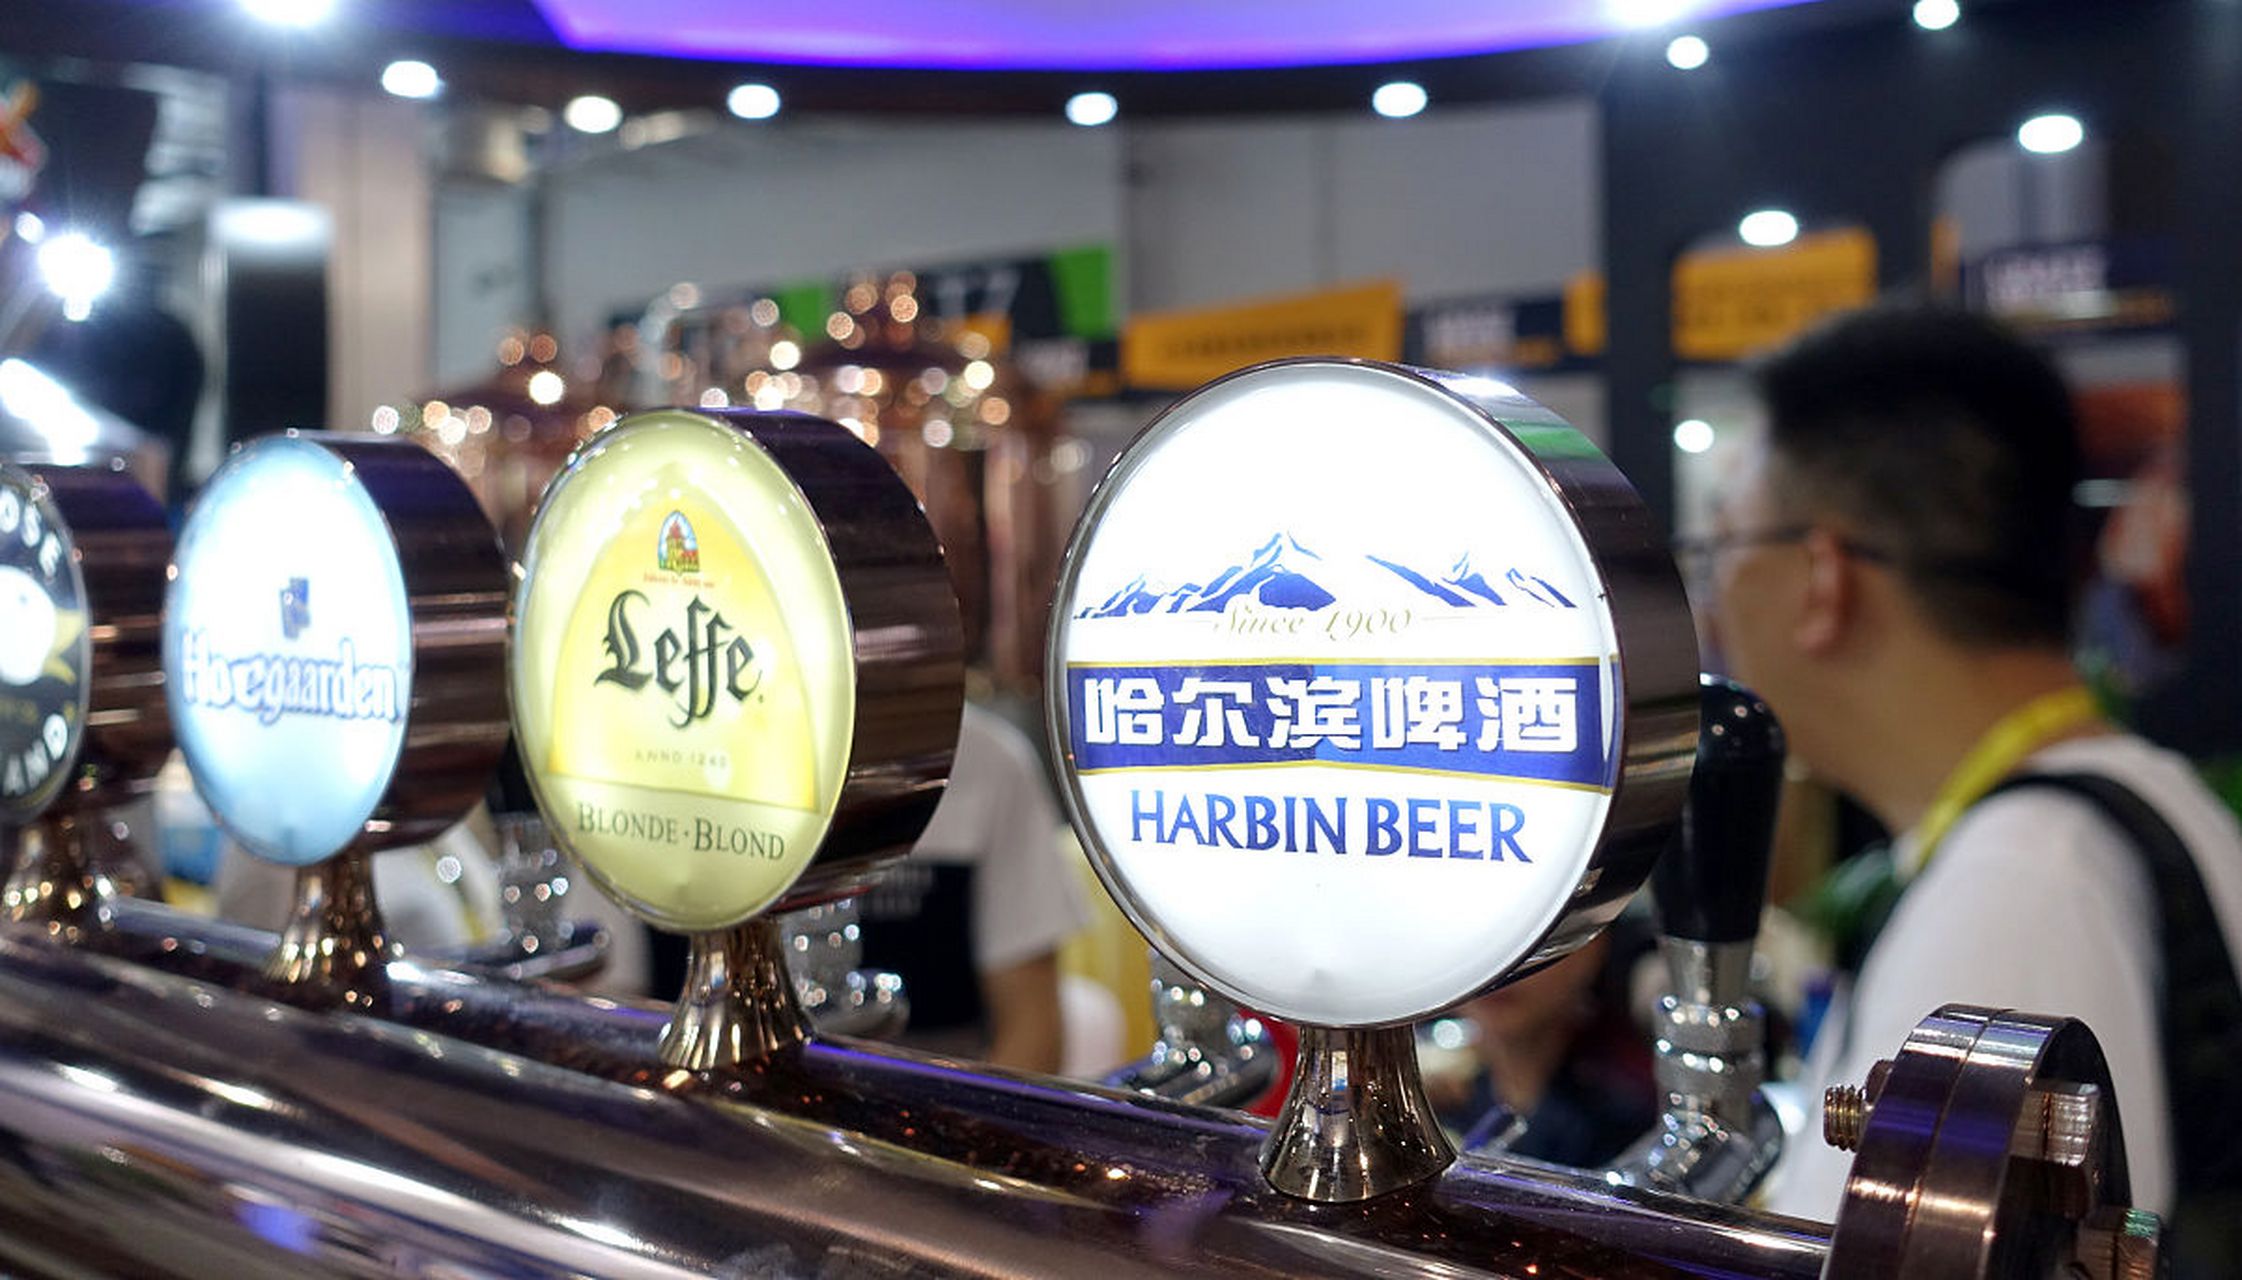 据香港消费者委员会的检测报告,哈尔滨麦道啤酒被检测出含有脱氧雪